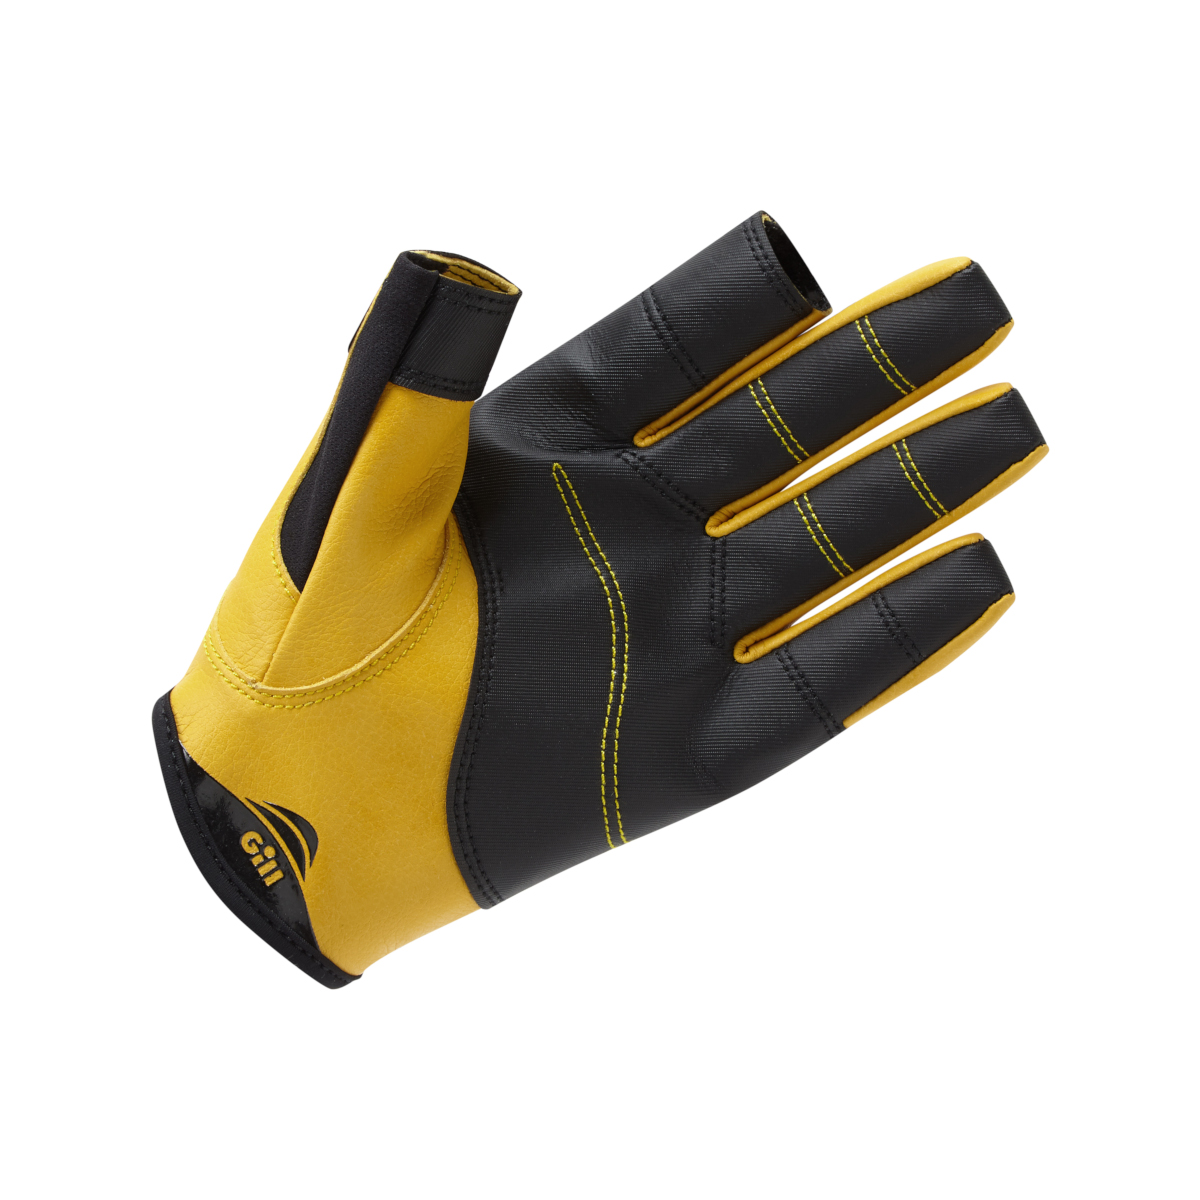 Gill Pro gants de voile à doigts longs - noir, taille XL